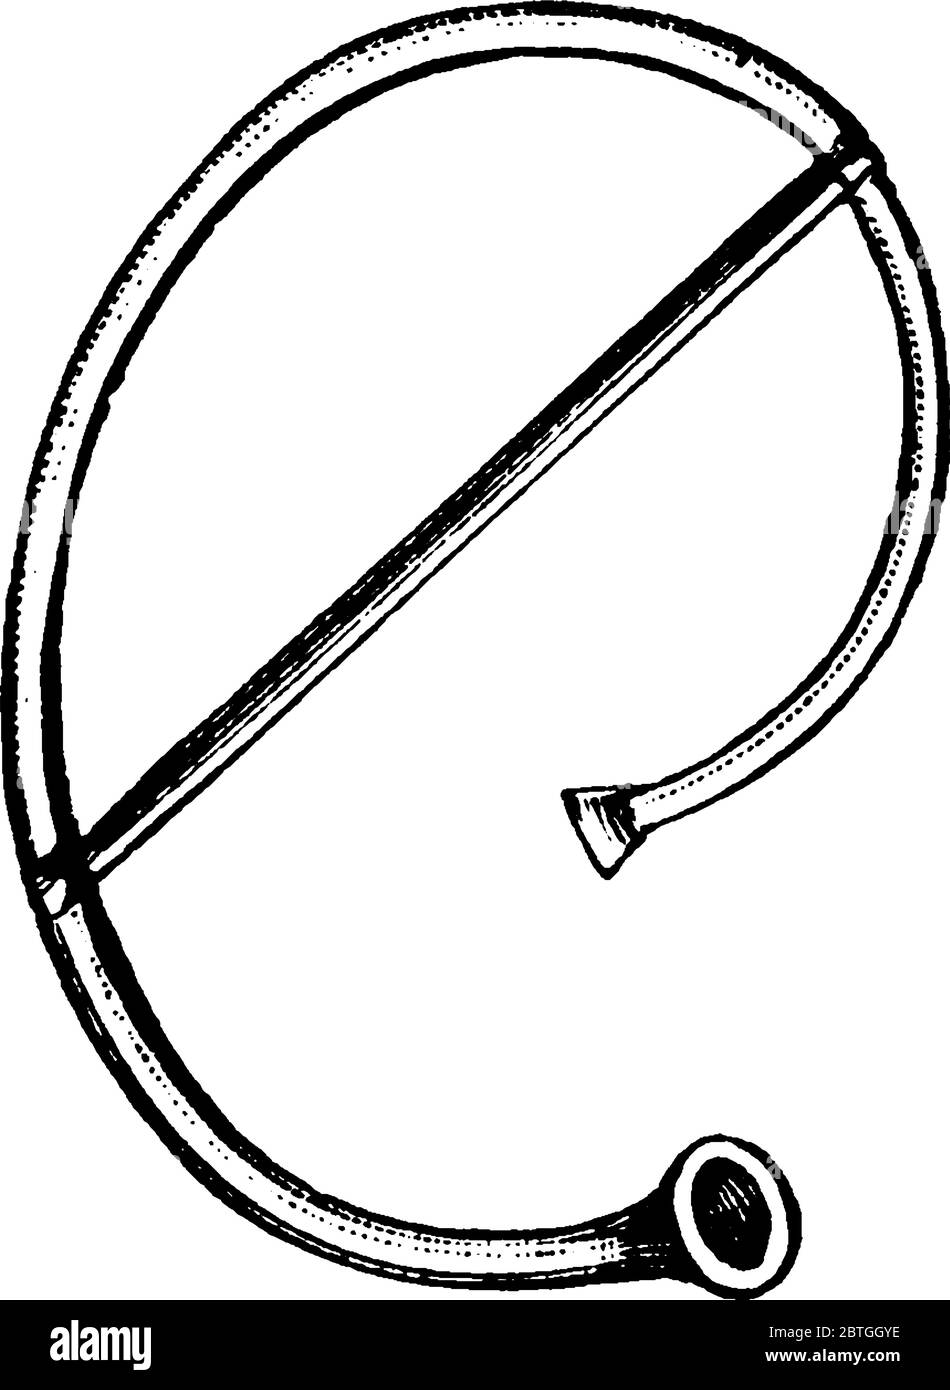 Horn, uno strumento musicale utilizzato dagli antichi romani, è fatto di ottone e di un tubo avvolto in una bobina con una campana svasata. Cornu è una parola latina per Illustrazione Vettoriale